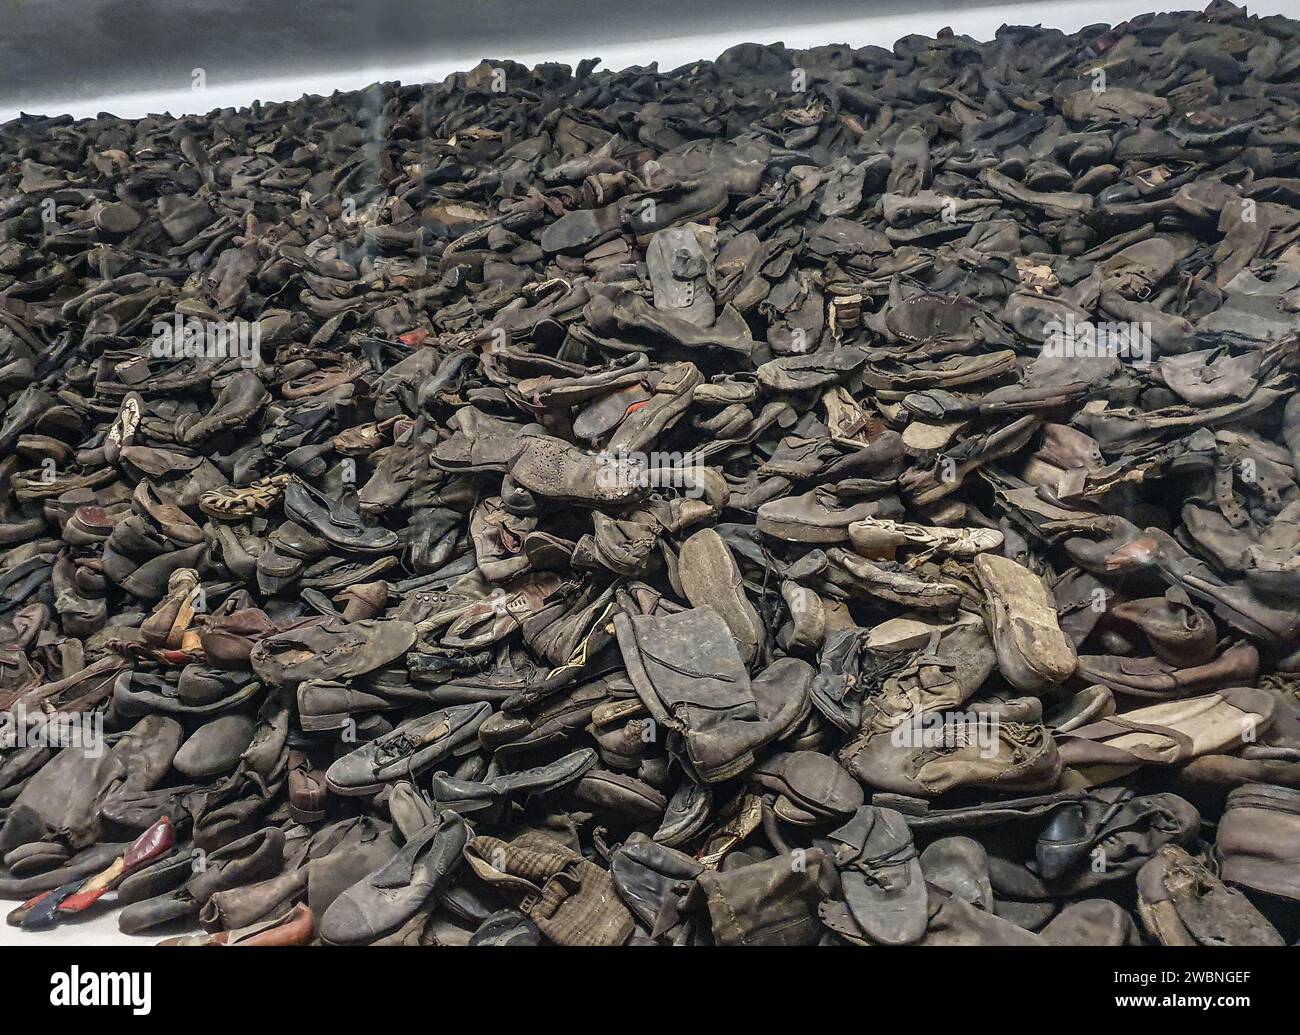 Auschwitz, ein ehemaliges Konzentrationslager der Nazis, zeigt einen Haufen Schuhe von jüdischen Frauen, Männern und Kindern, die von Hitler grausam ermordet wurden. Stockfoto